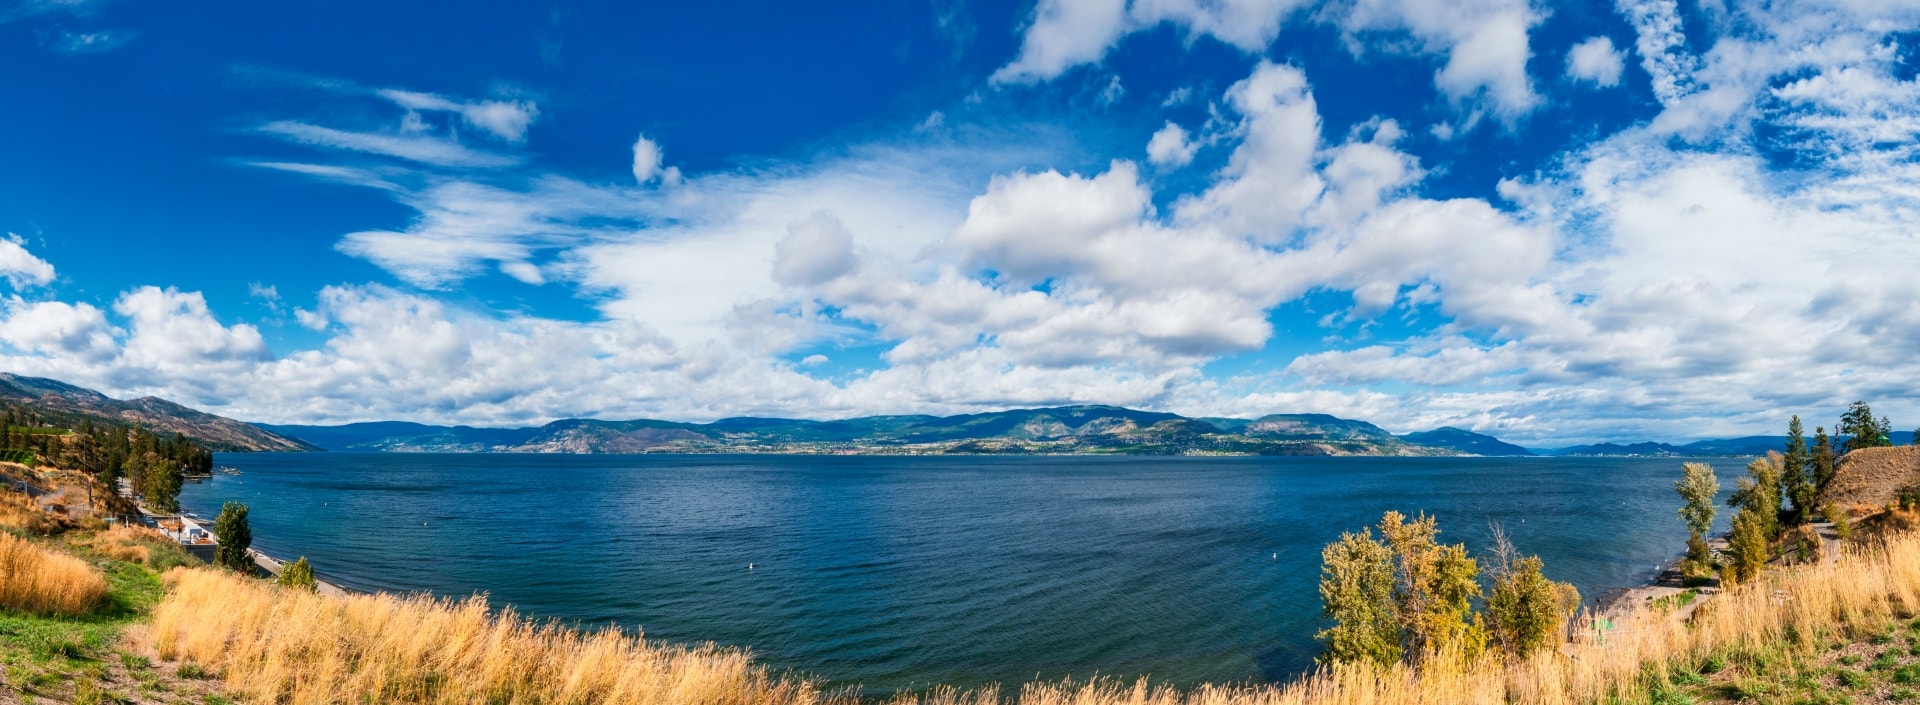 lakeshore-panorama-min.jpg